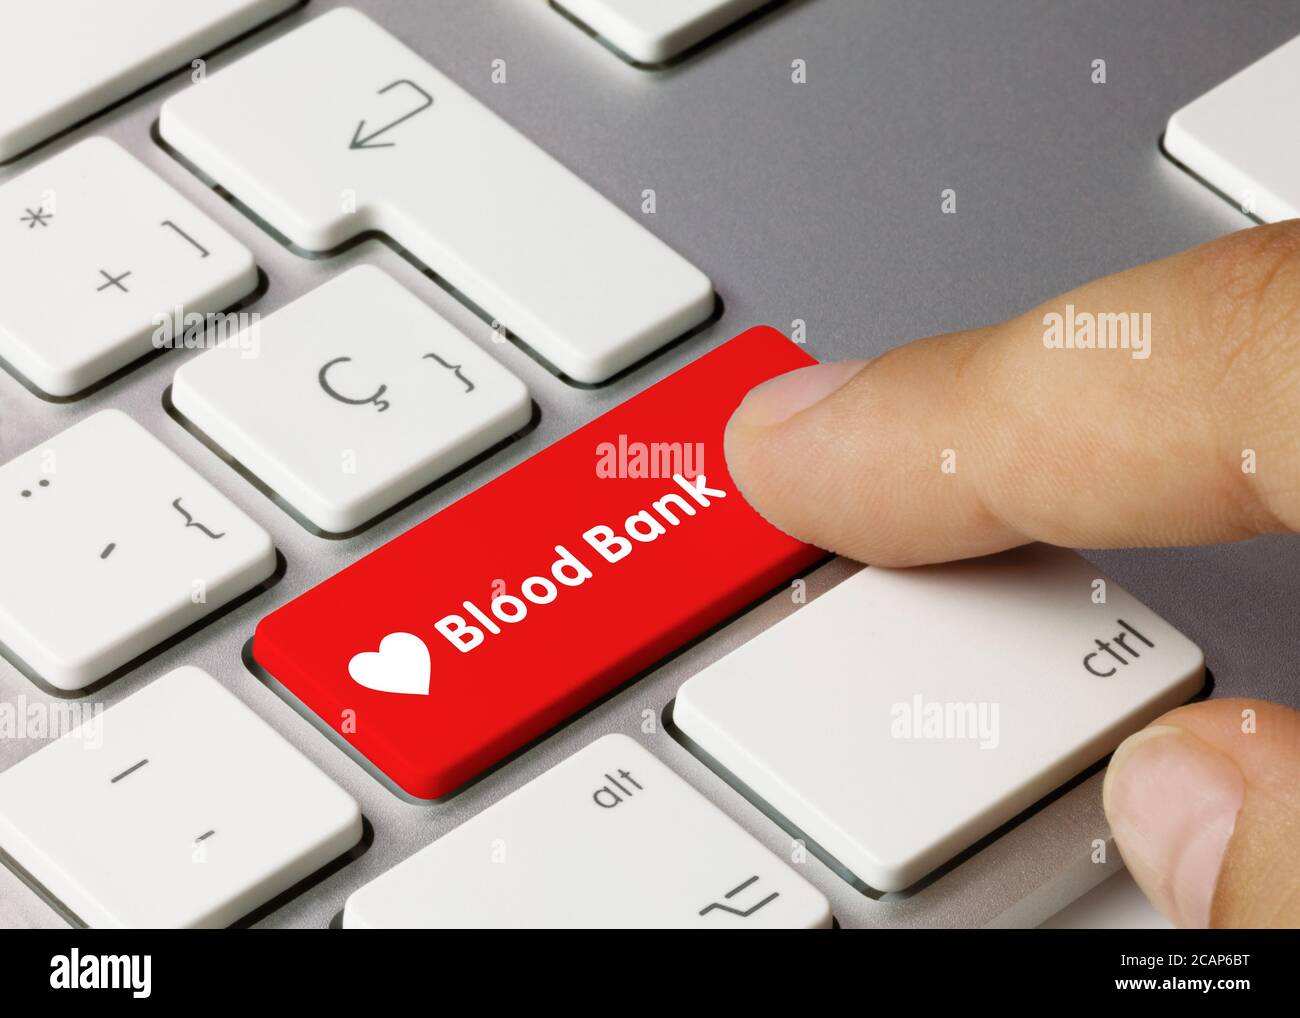 Blood Bank scritto su tasto rosso della tastiera metallica. Premere il tasto con il dito Foto Stock